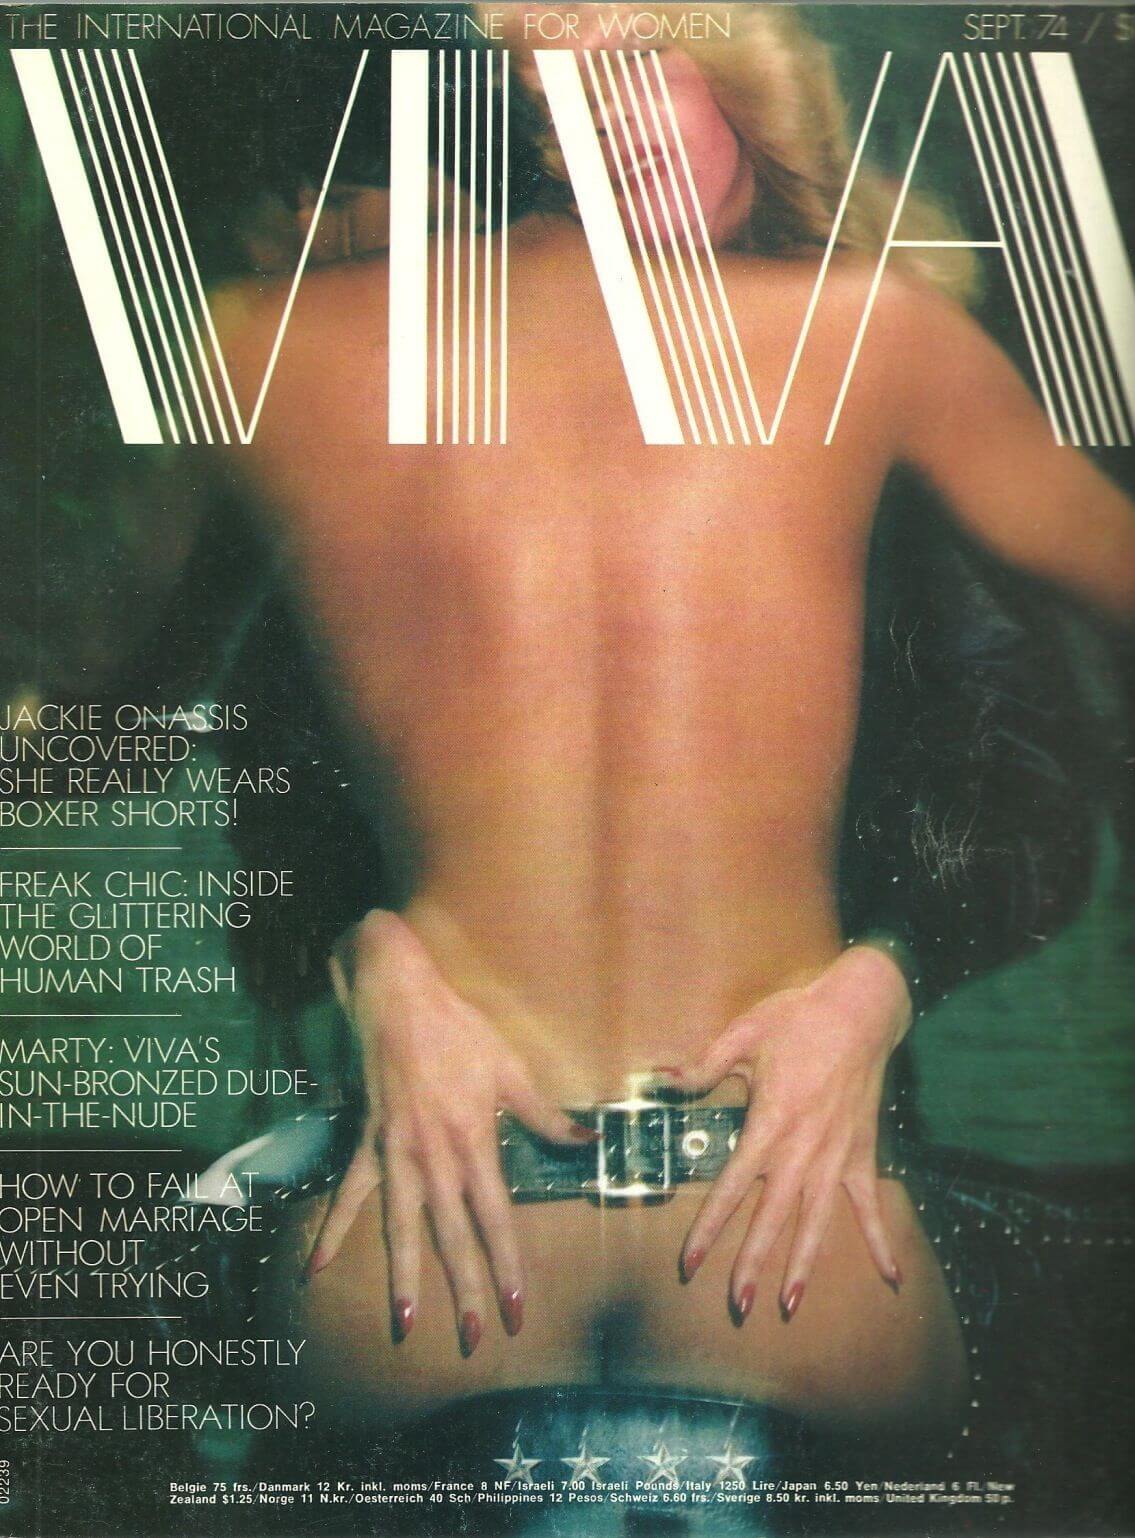 Negli anni 70 nasceva Viva, rivoluzionaria rivista porno per donne